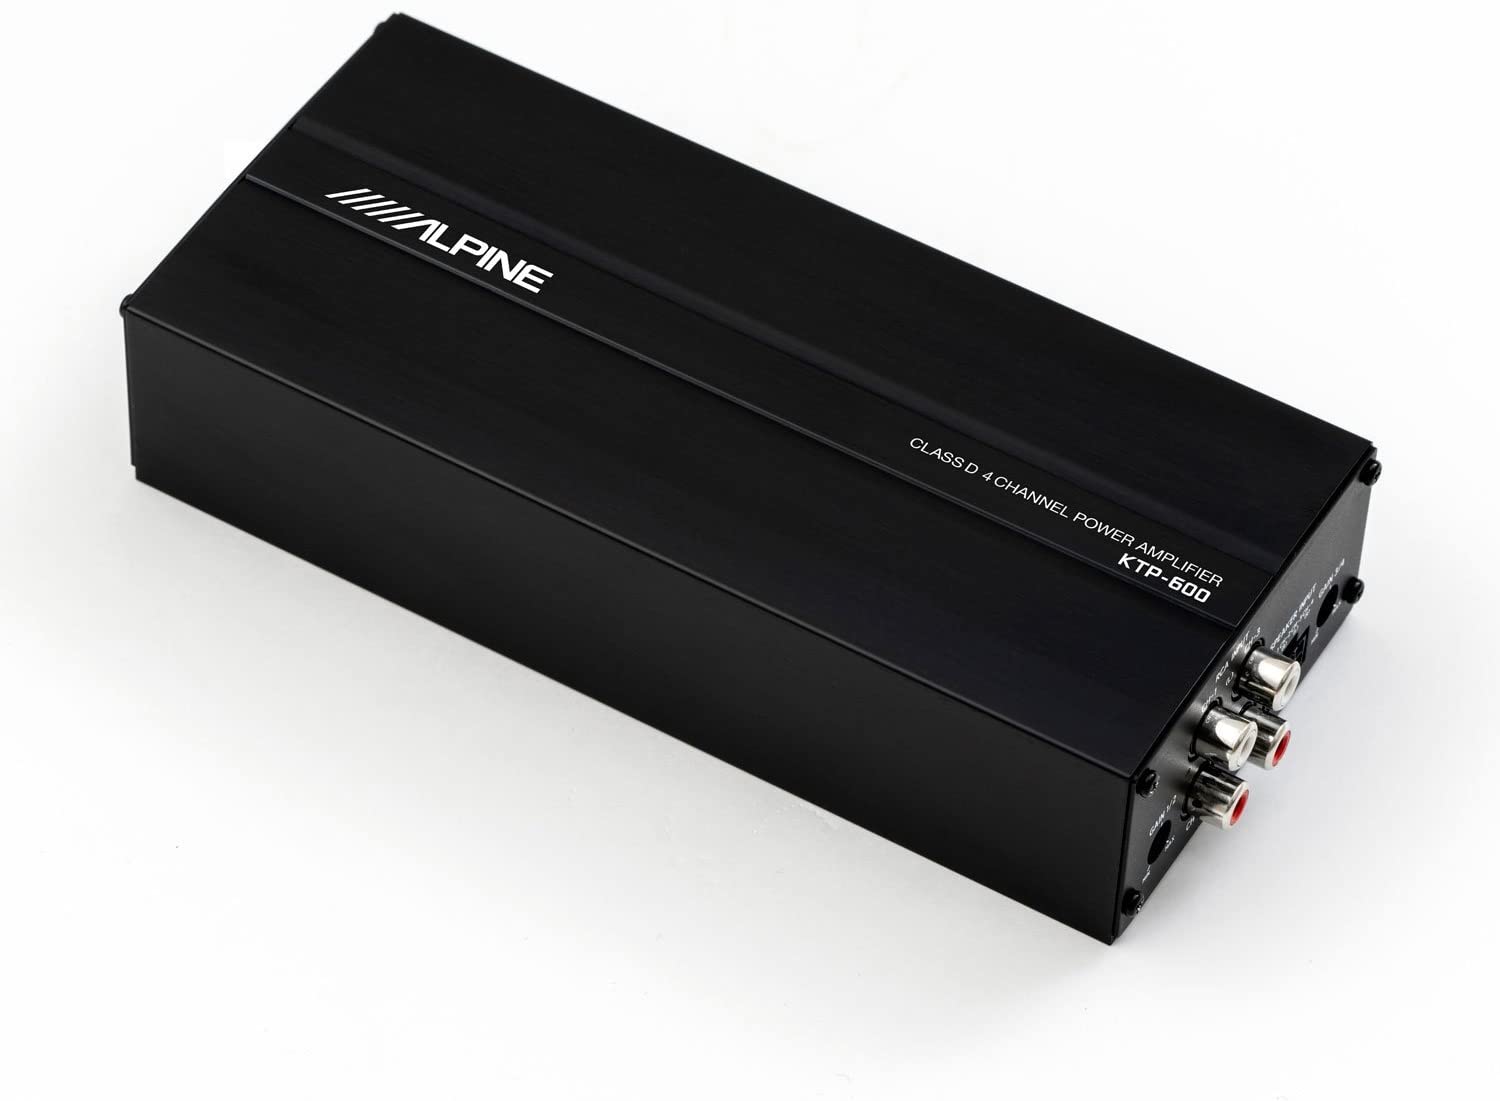 アルパイン ALPINE 売買 4チャンネル 激安通販専門店 デジタルパワーアンプ KTP-600 コンパクト